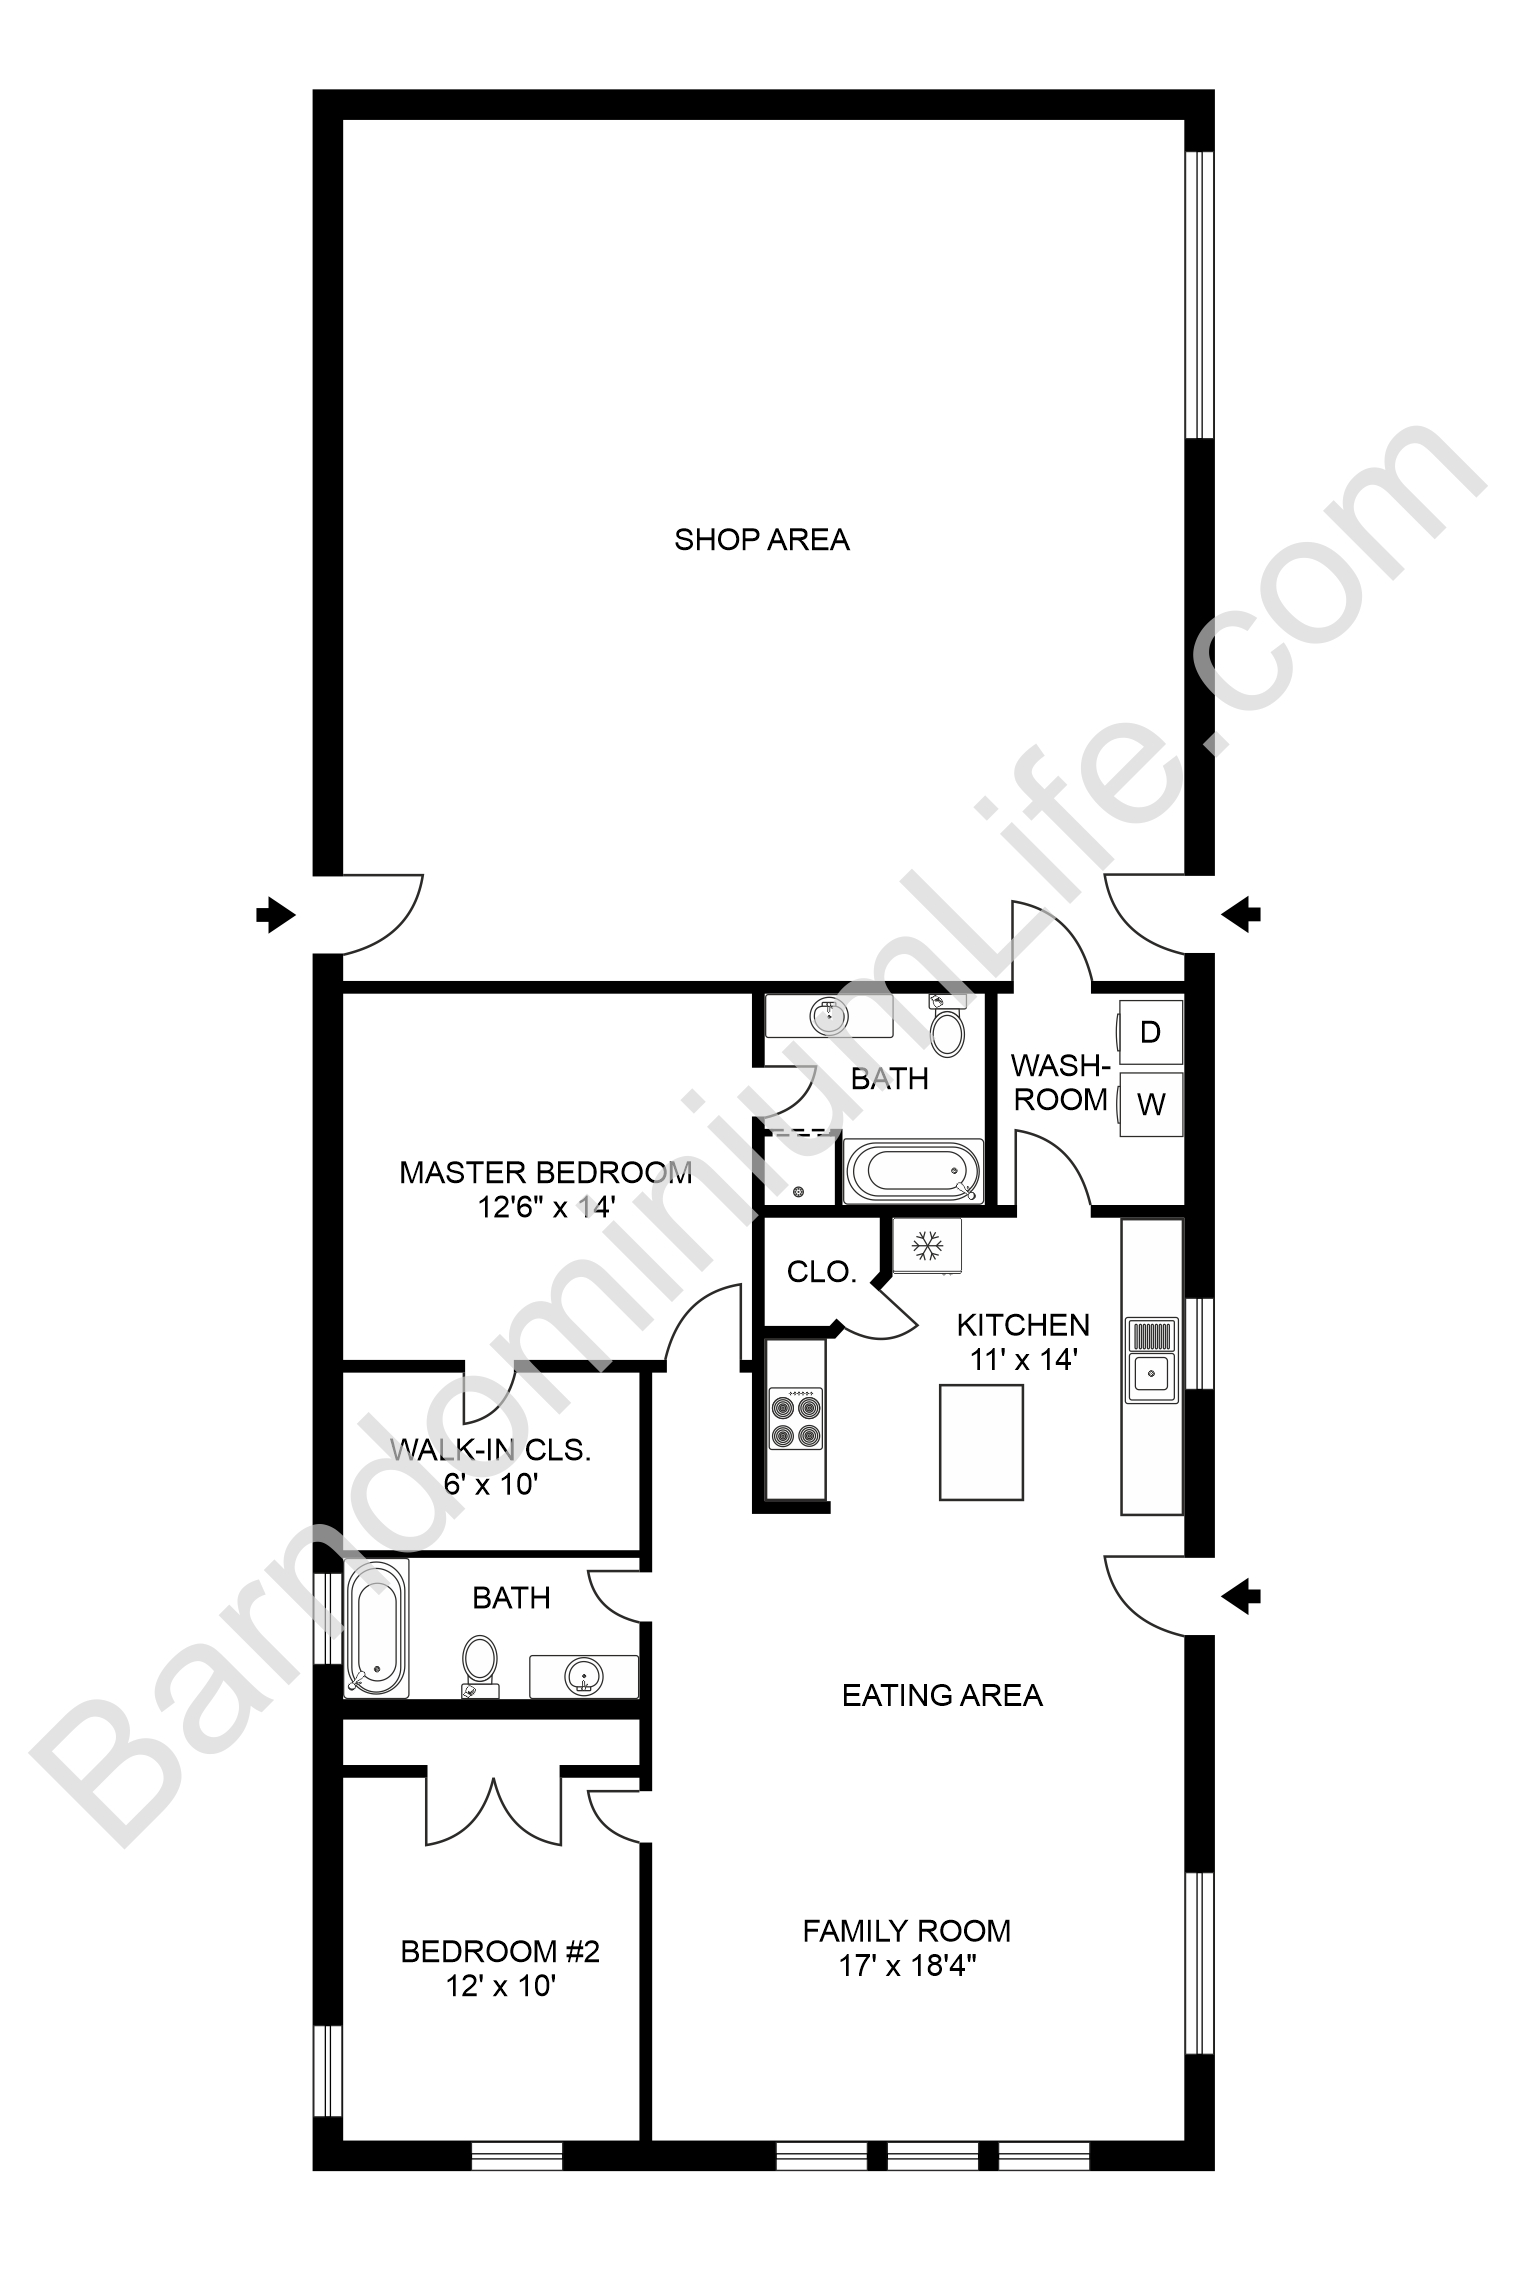 2 Bedroom Barndominium Floor Plans